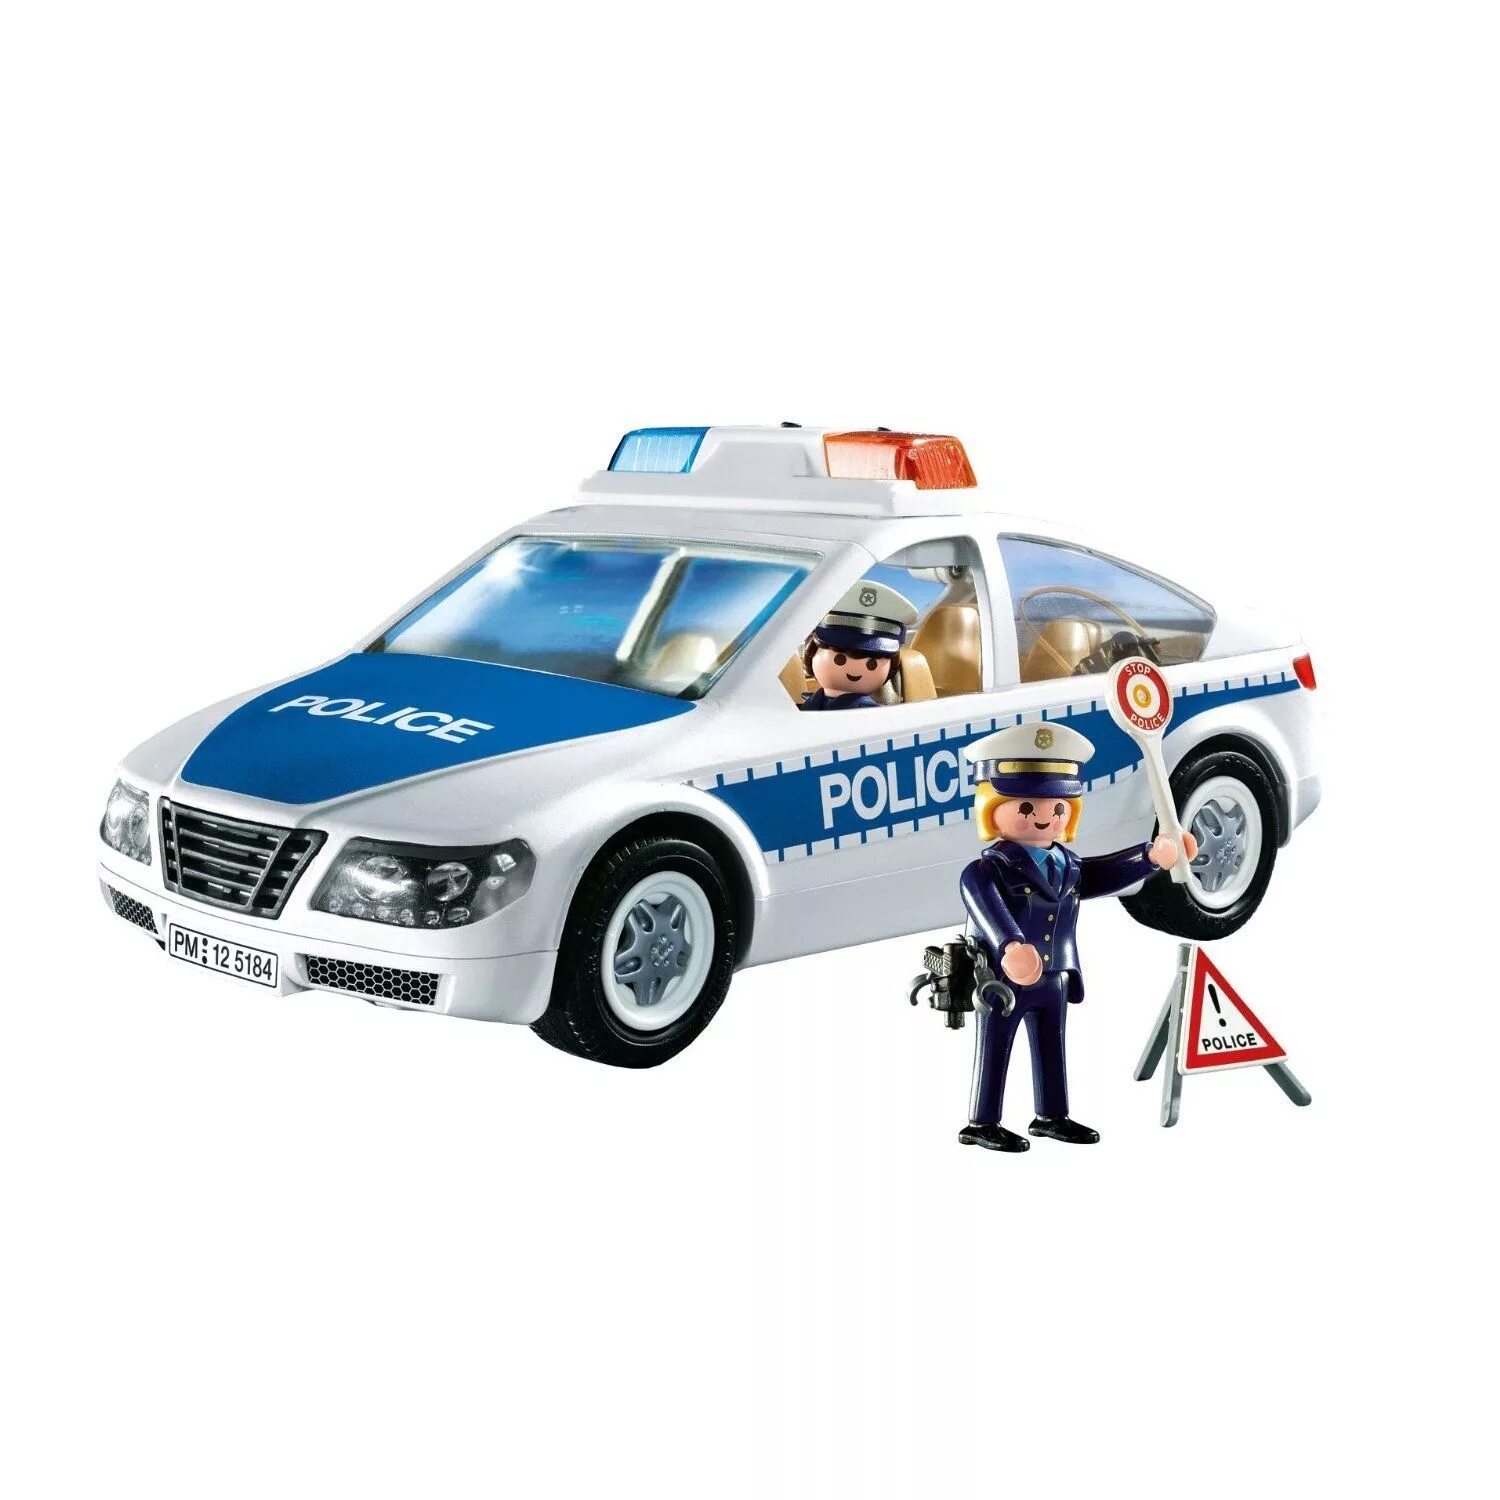 Полицейская машинка картинка. Машинки полиция для детей. Полицейская машина игрушечная. Игрушка "Полицейская машина". Полицейская машина для детей.